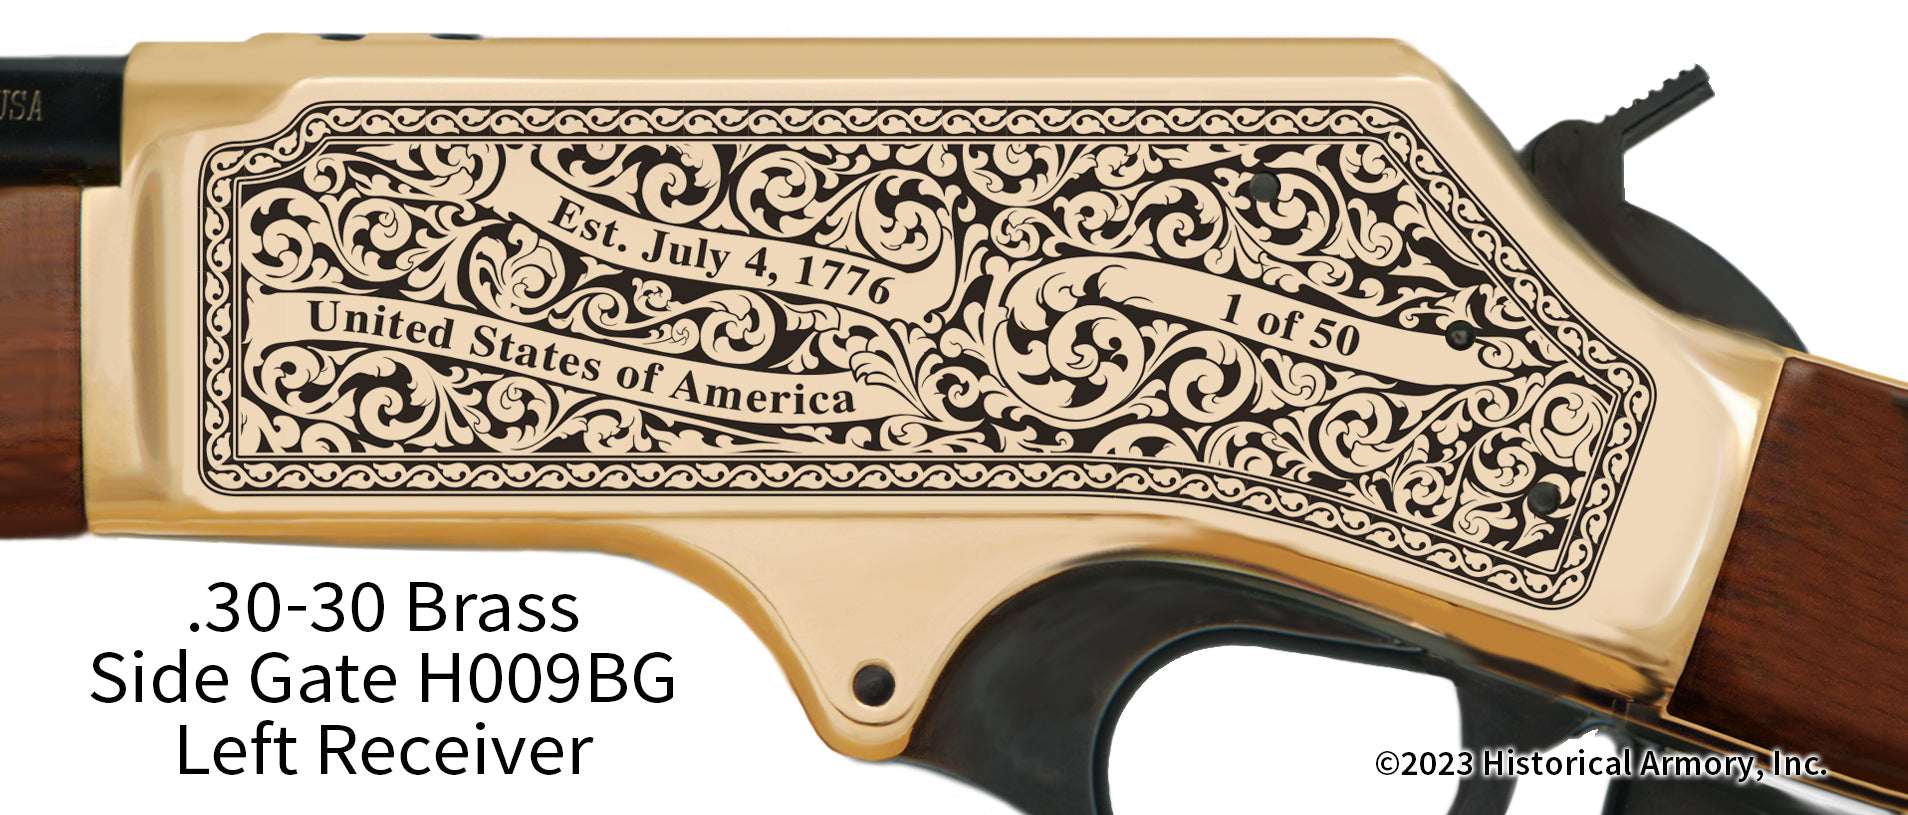 Edmunds County South Dakota Engraved Henry .30-30 Brass Side Gate Rifle